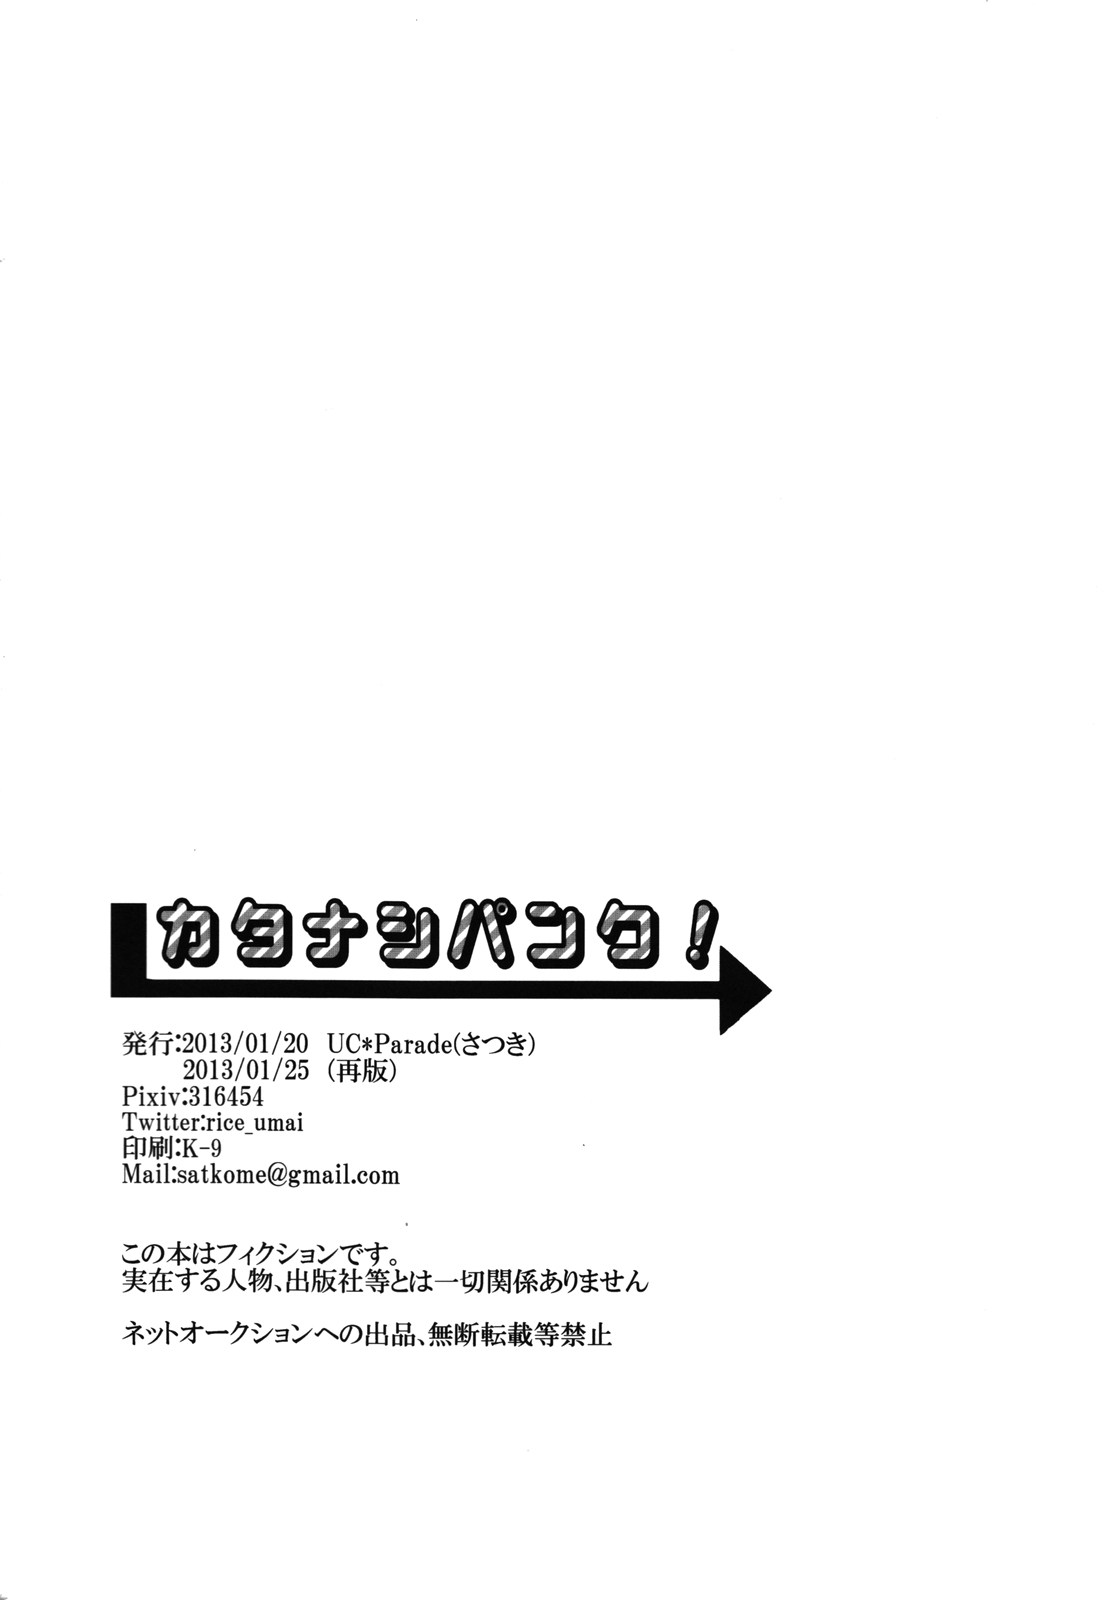 (Golden Blood 9) [UC*Parade (さつき)] カタナシパンク! (ジョジョの奇妙な冒険)